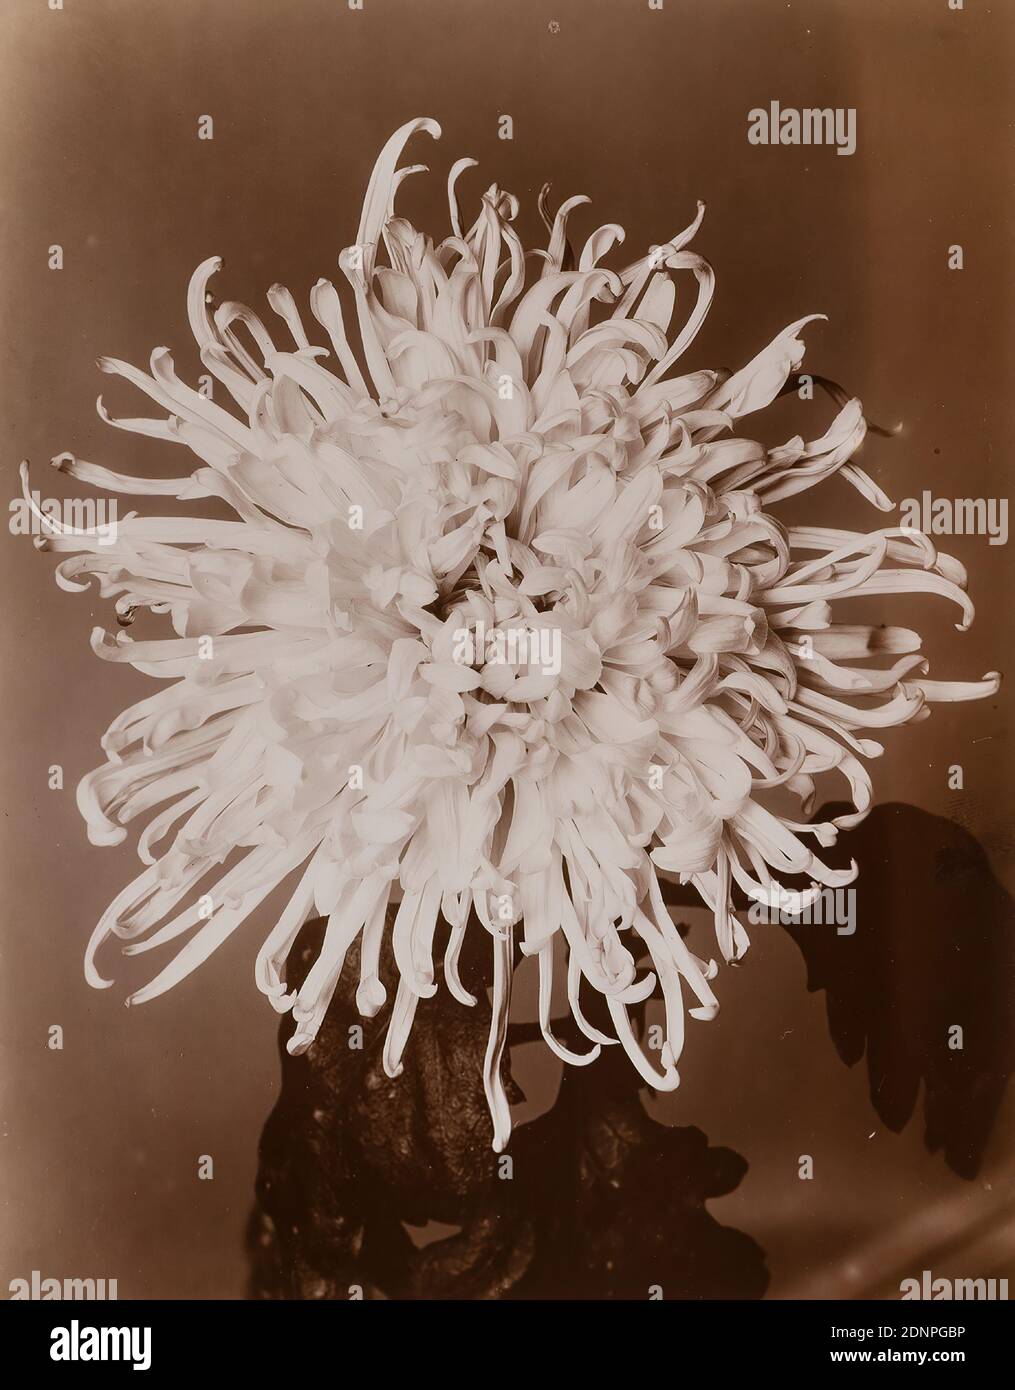 Wilhelm Weimar, crisantemo, papel de albúmina, proceso positivo en blanco y negro, tamaño de imagen: Altura: 23,80 cm; ancho: 17,40 cm, 195 y: B! Se vuelve más blanco a través de la amplificación. Tamaño, sello: Fotografía, flores Foto de stock